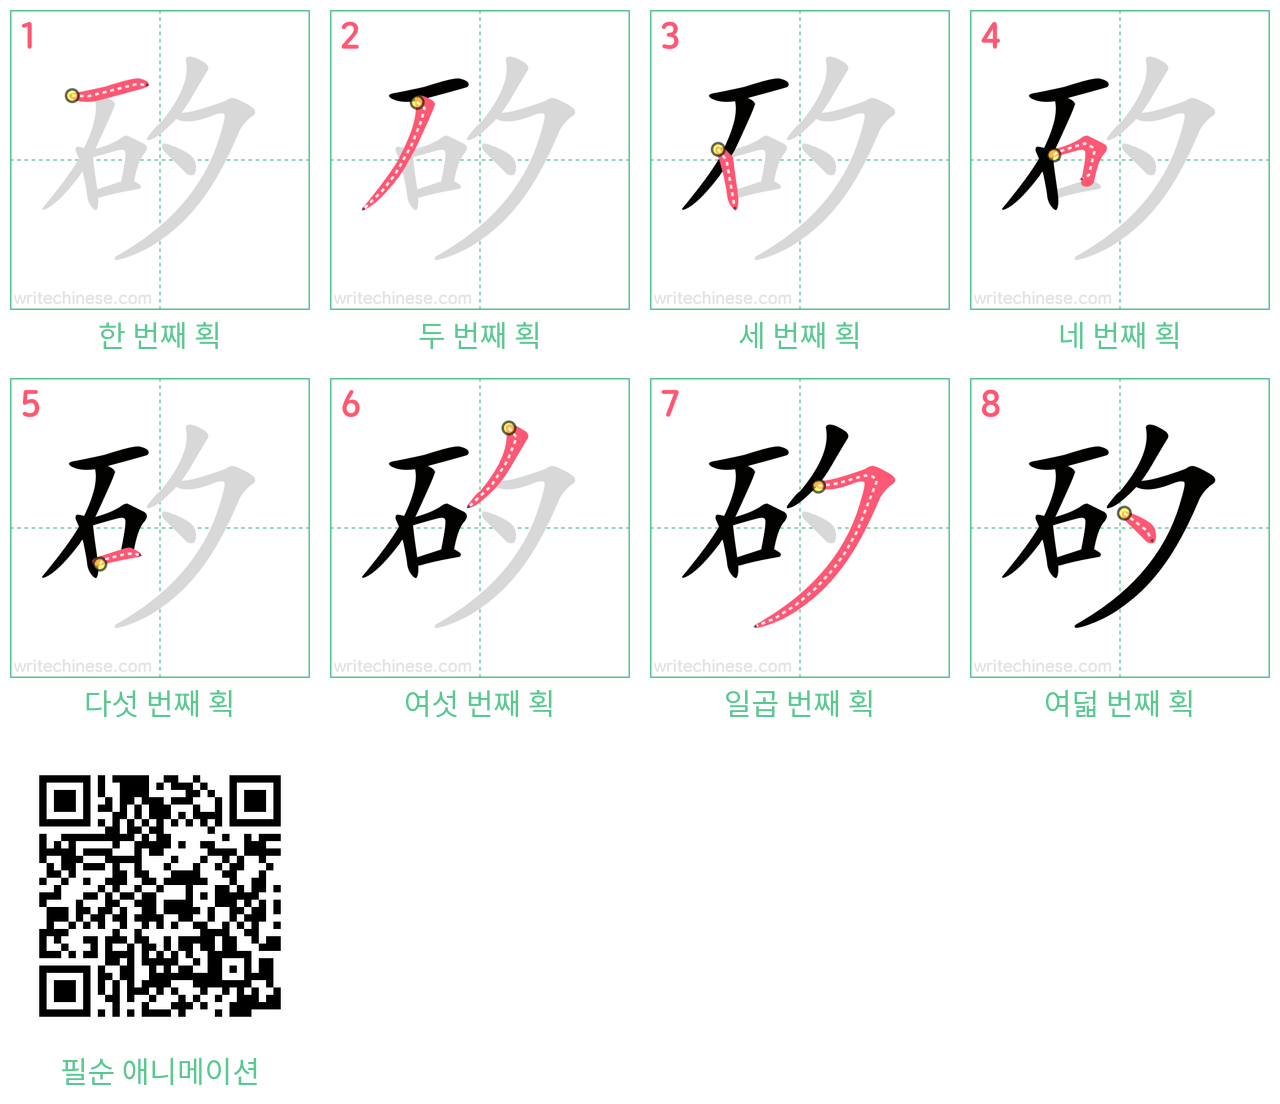 矽 step-by-step stroke order diagrams